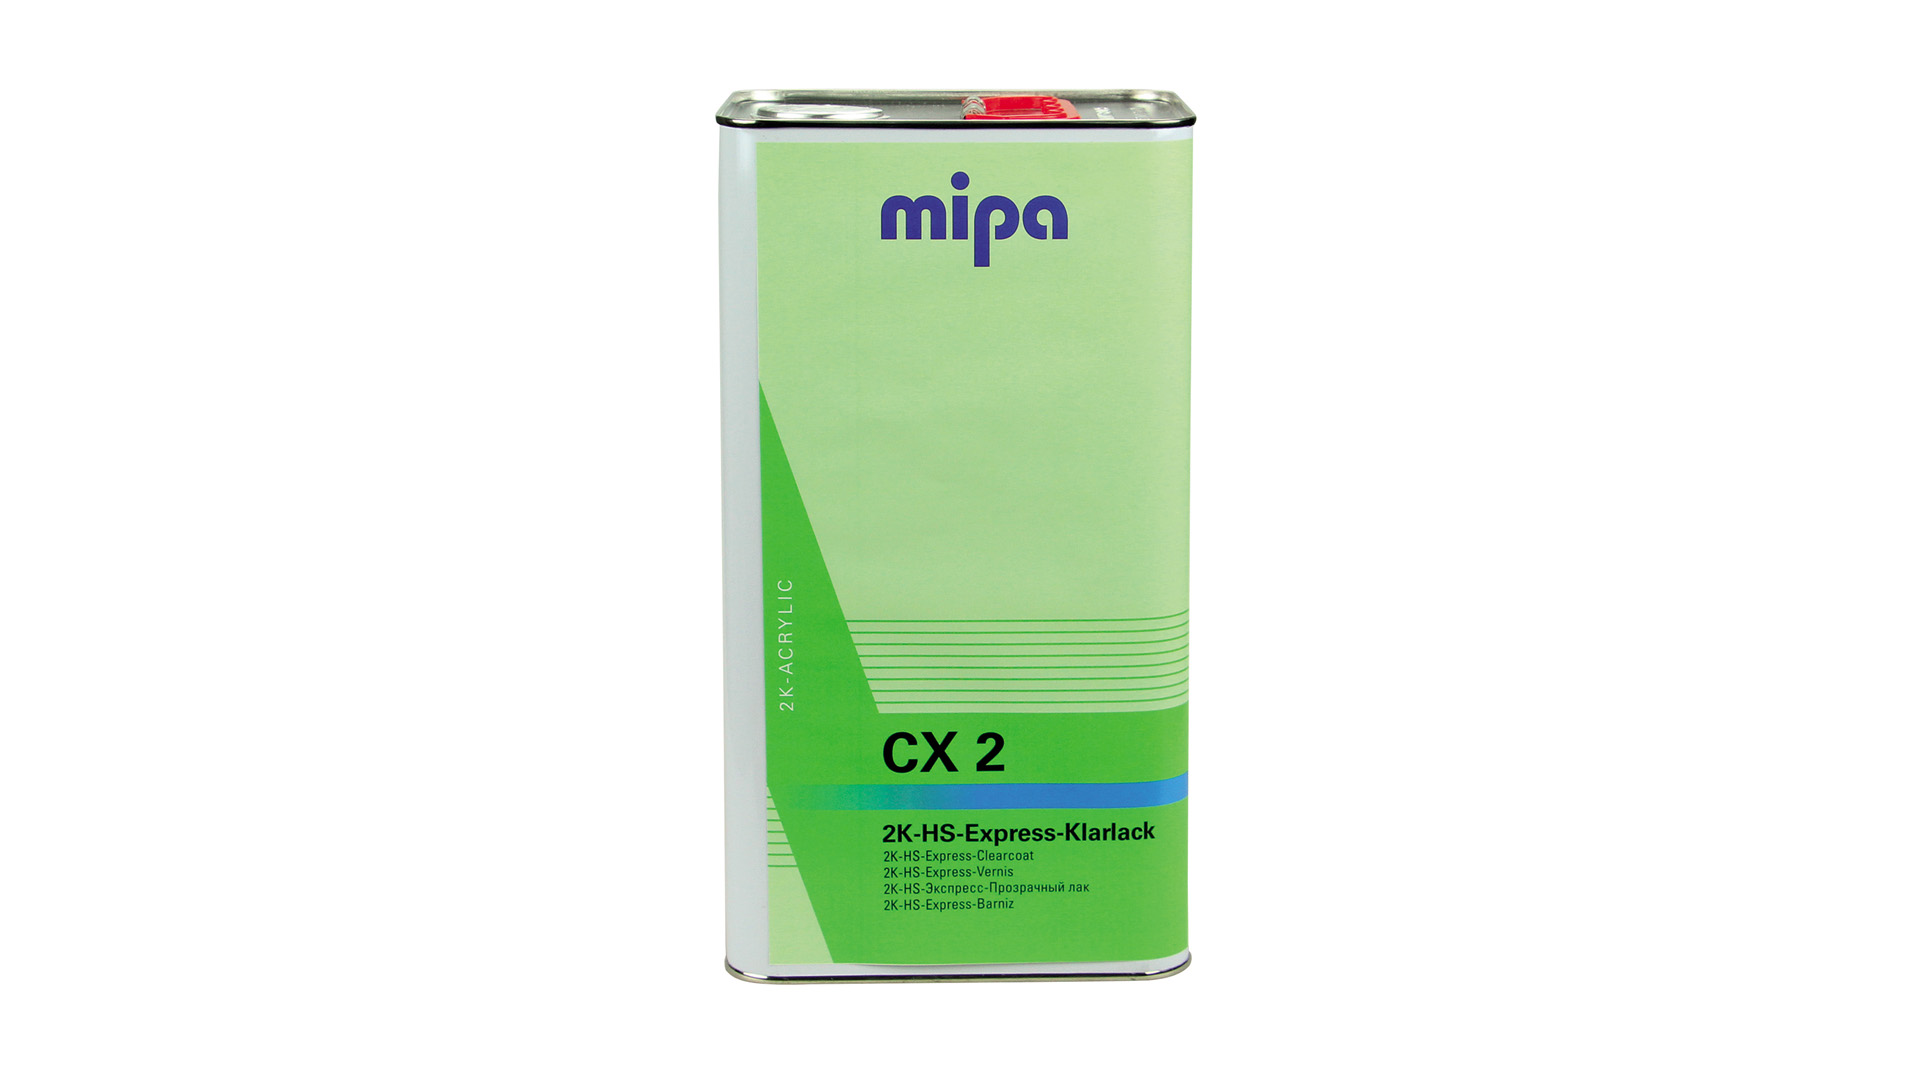 Mipa 2K-HS-Express-Klarlack CX 2 (5l)